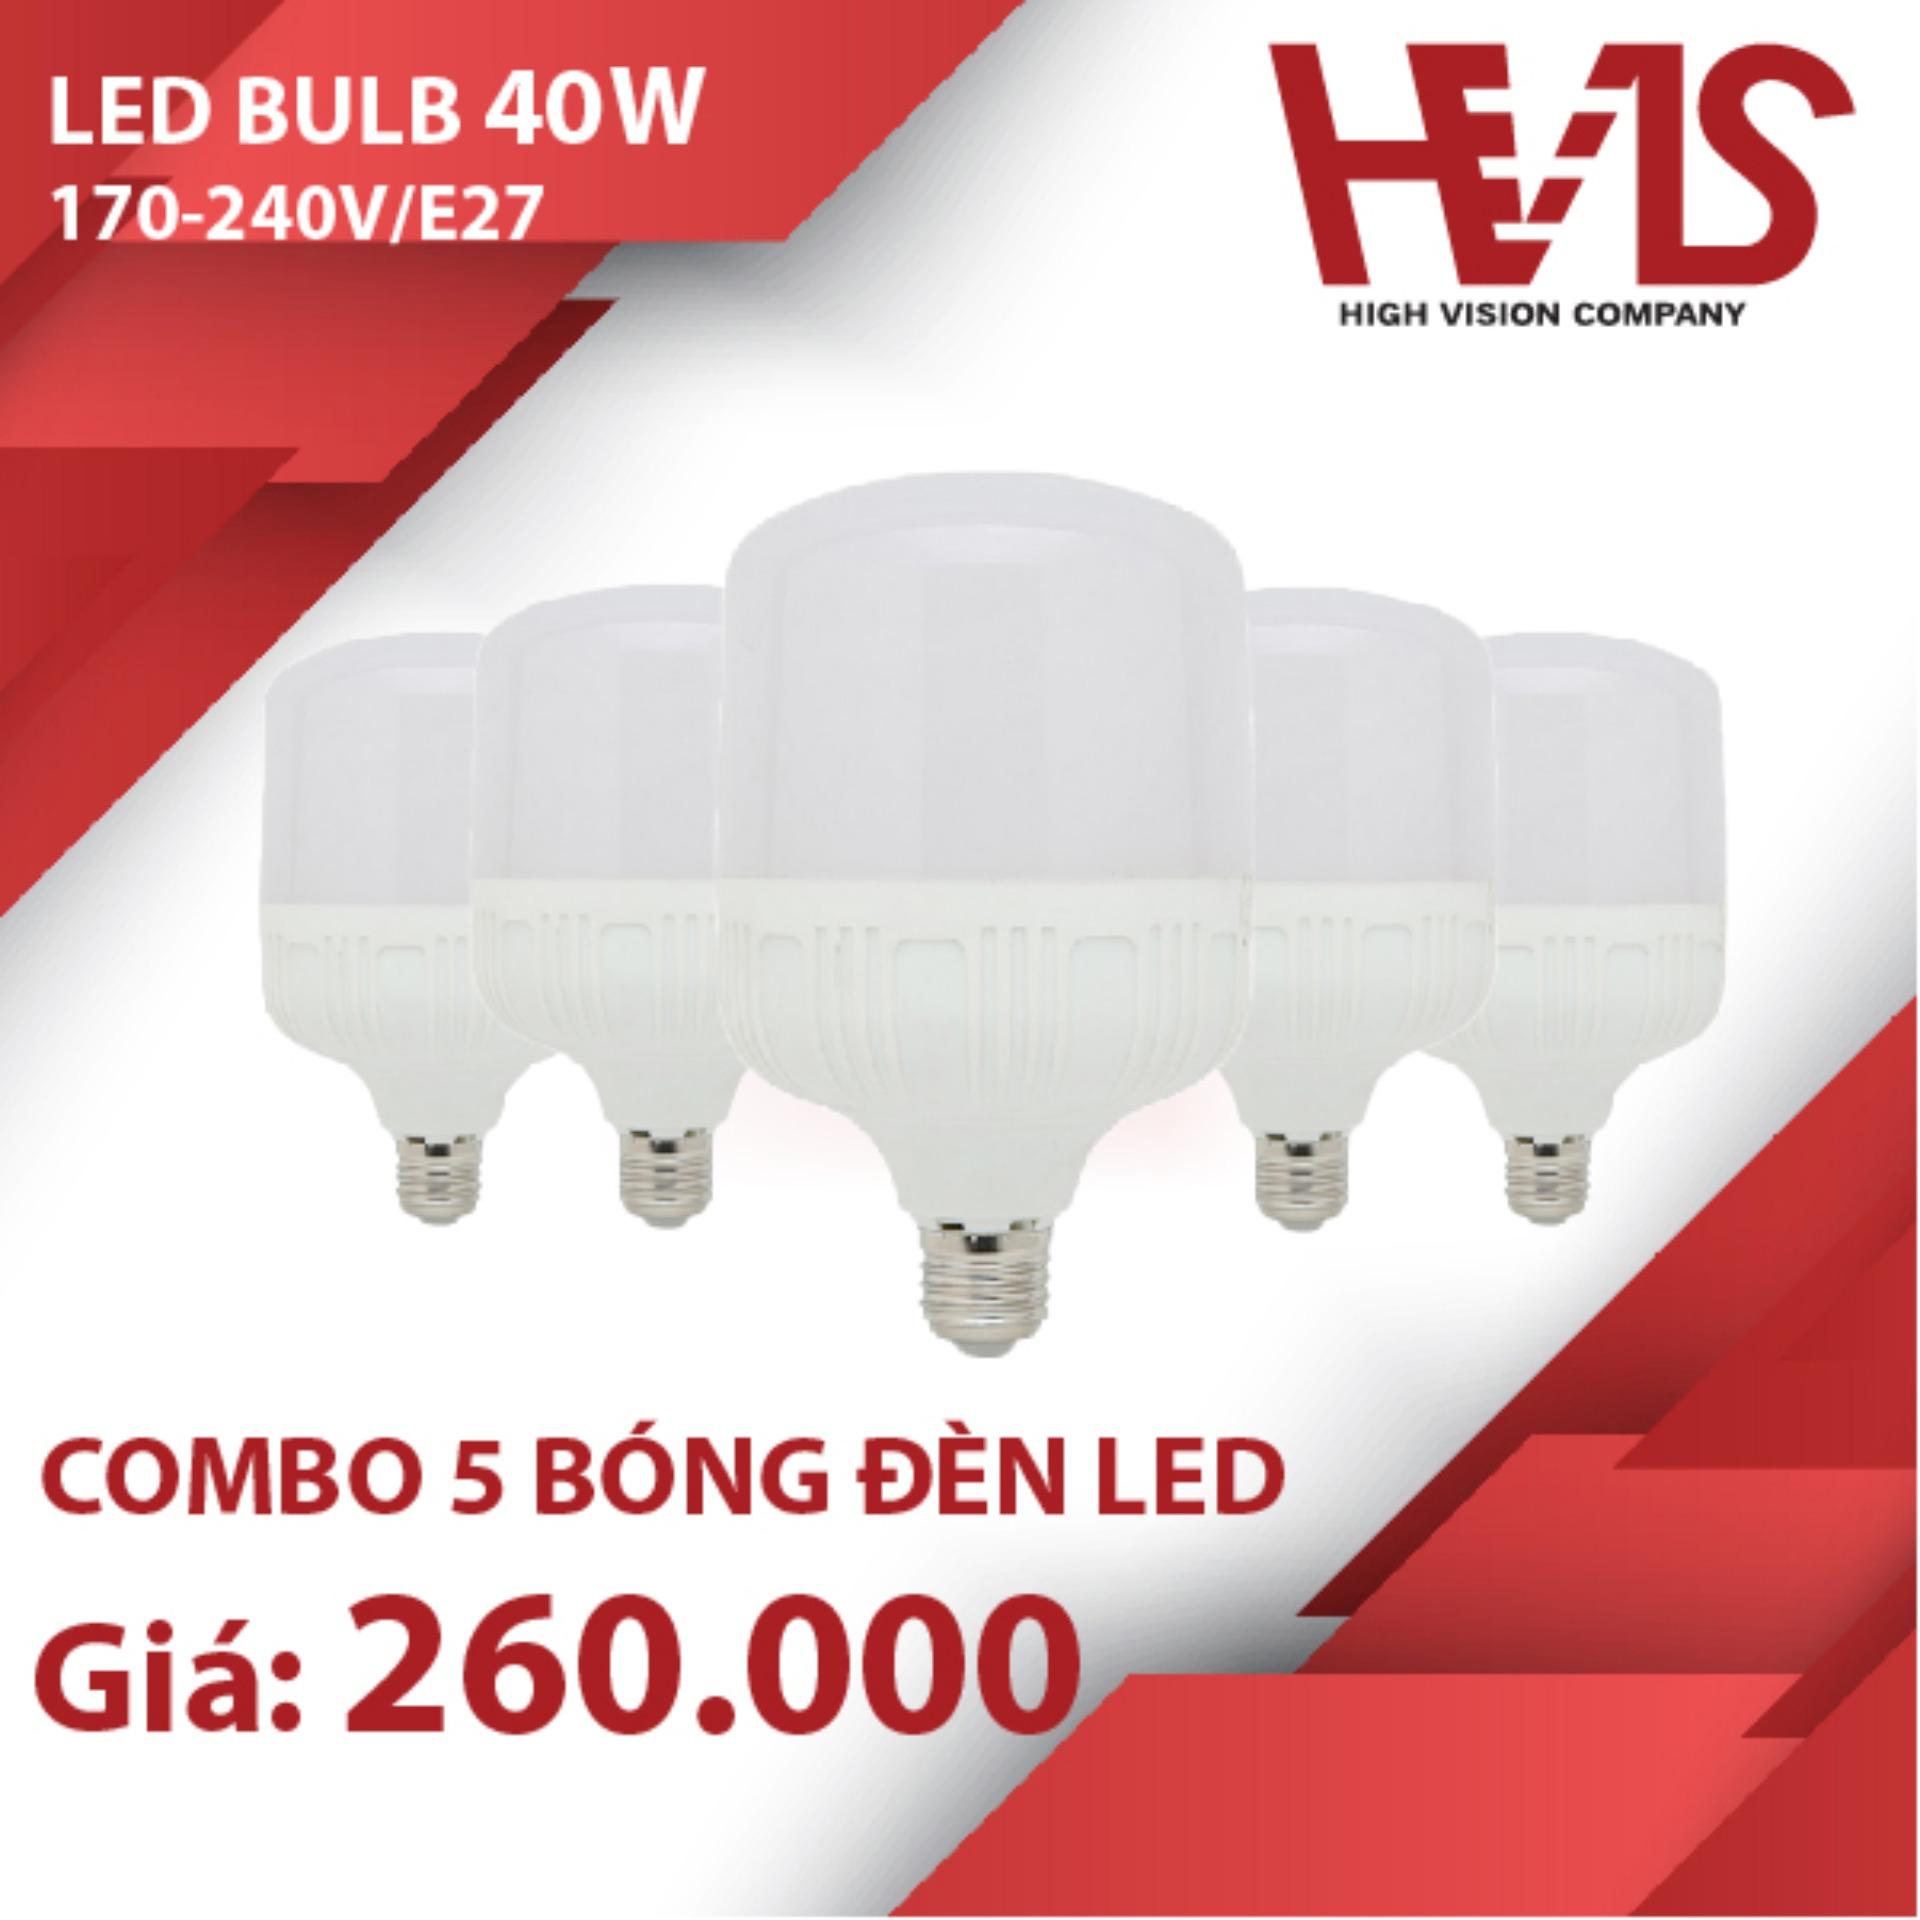 Combo 5 Bóng đèn led Bulb hình trụ 40W E27 siêu sáng tiết kiệm điện